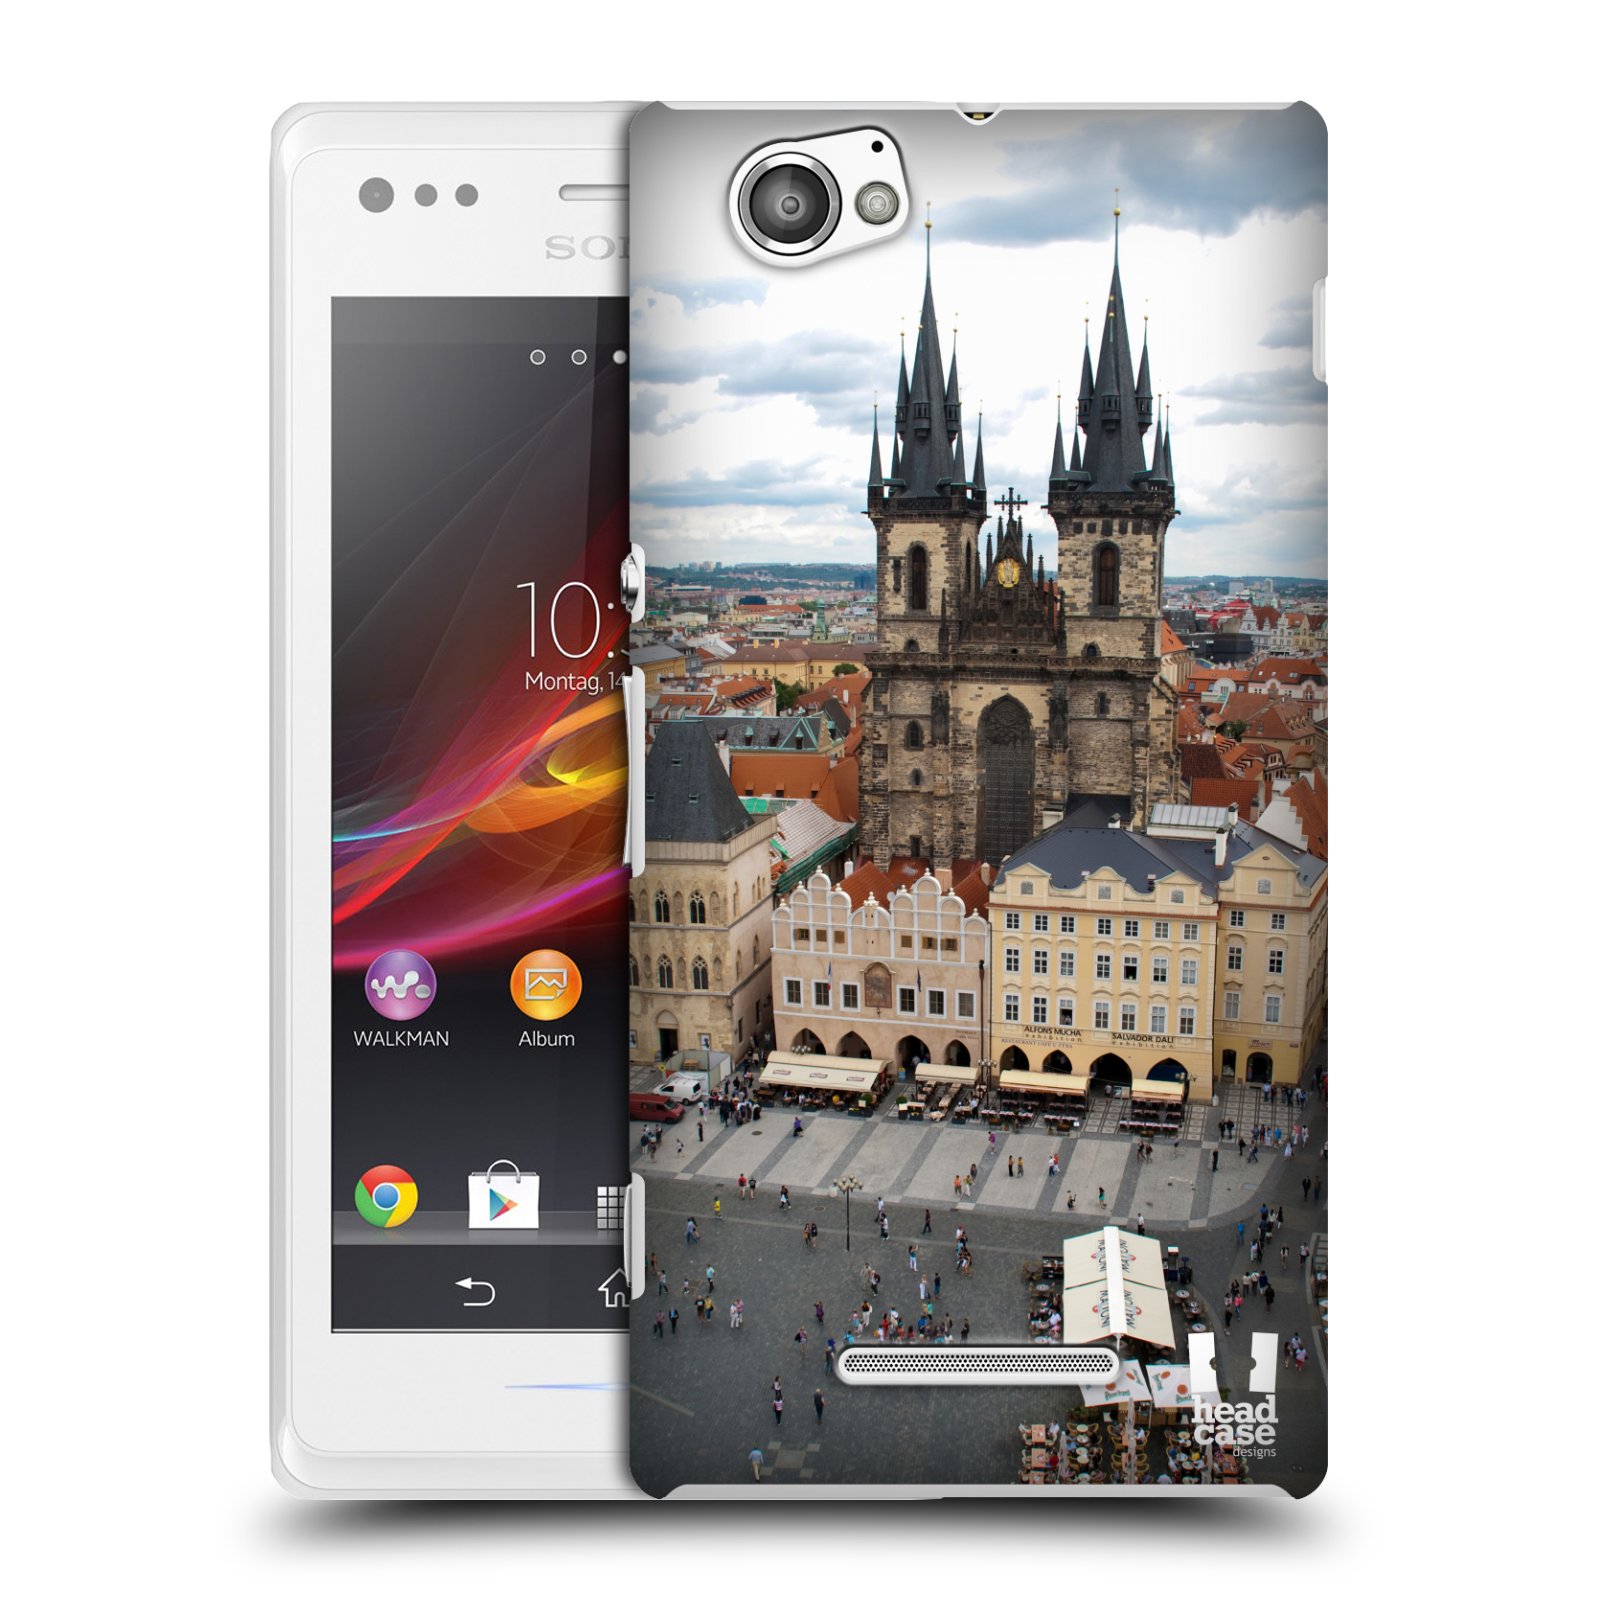 HEAD CASE plastový obal na mobil Sony Xperia M vzor Města foto náměstí ČESKÁ REPUBLIKA, PRAHA, STAROMĚSTSKÉ NÁMĚSTÍ